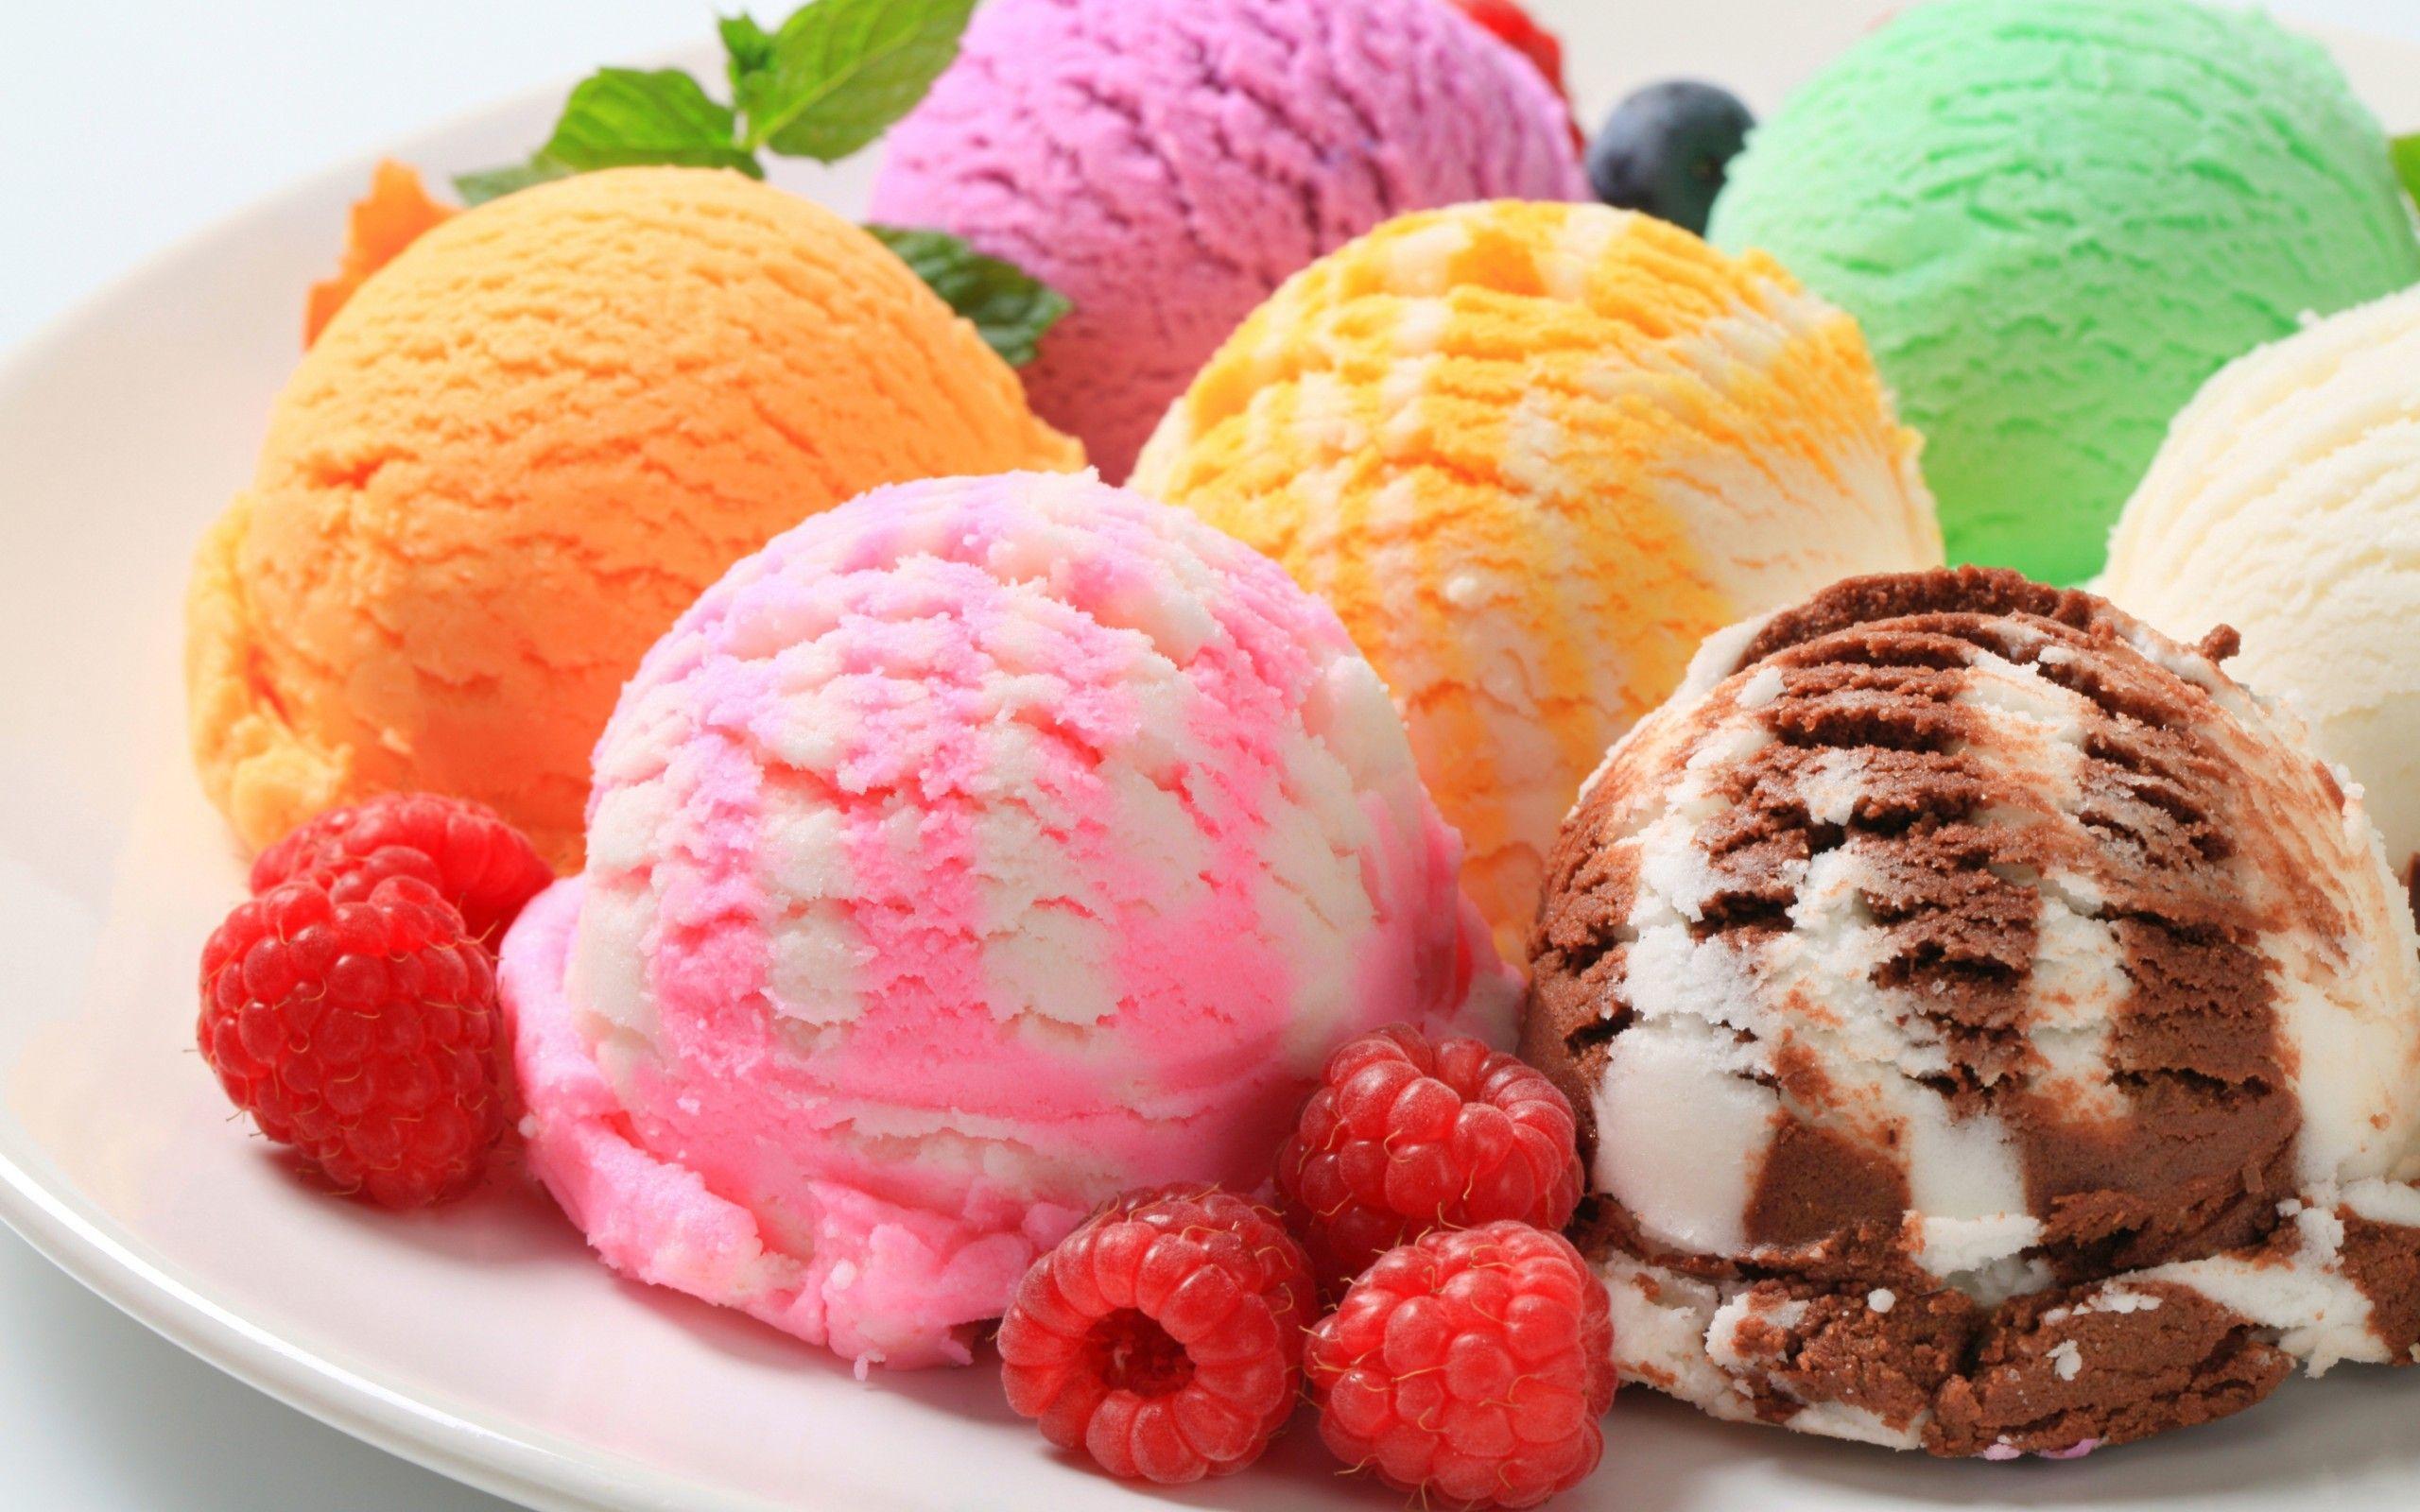 عکس بستنی های خوشمزه و رنگارنگ مخصوص پوستر بستنی فروشی ها